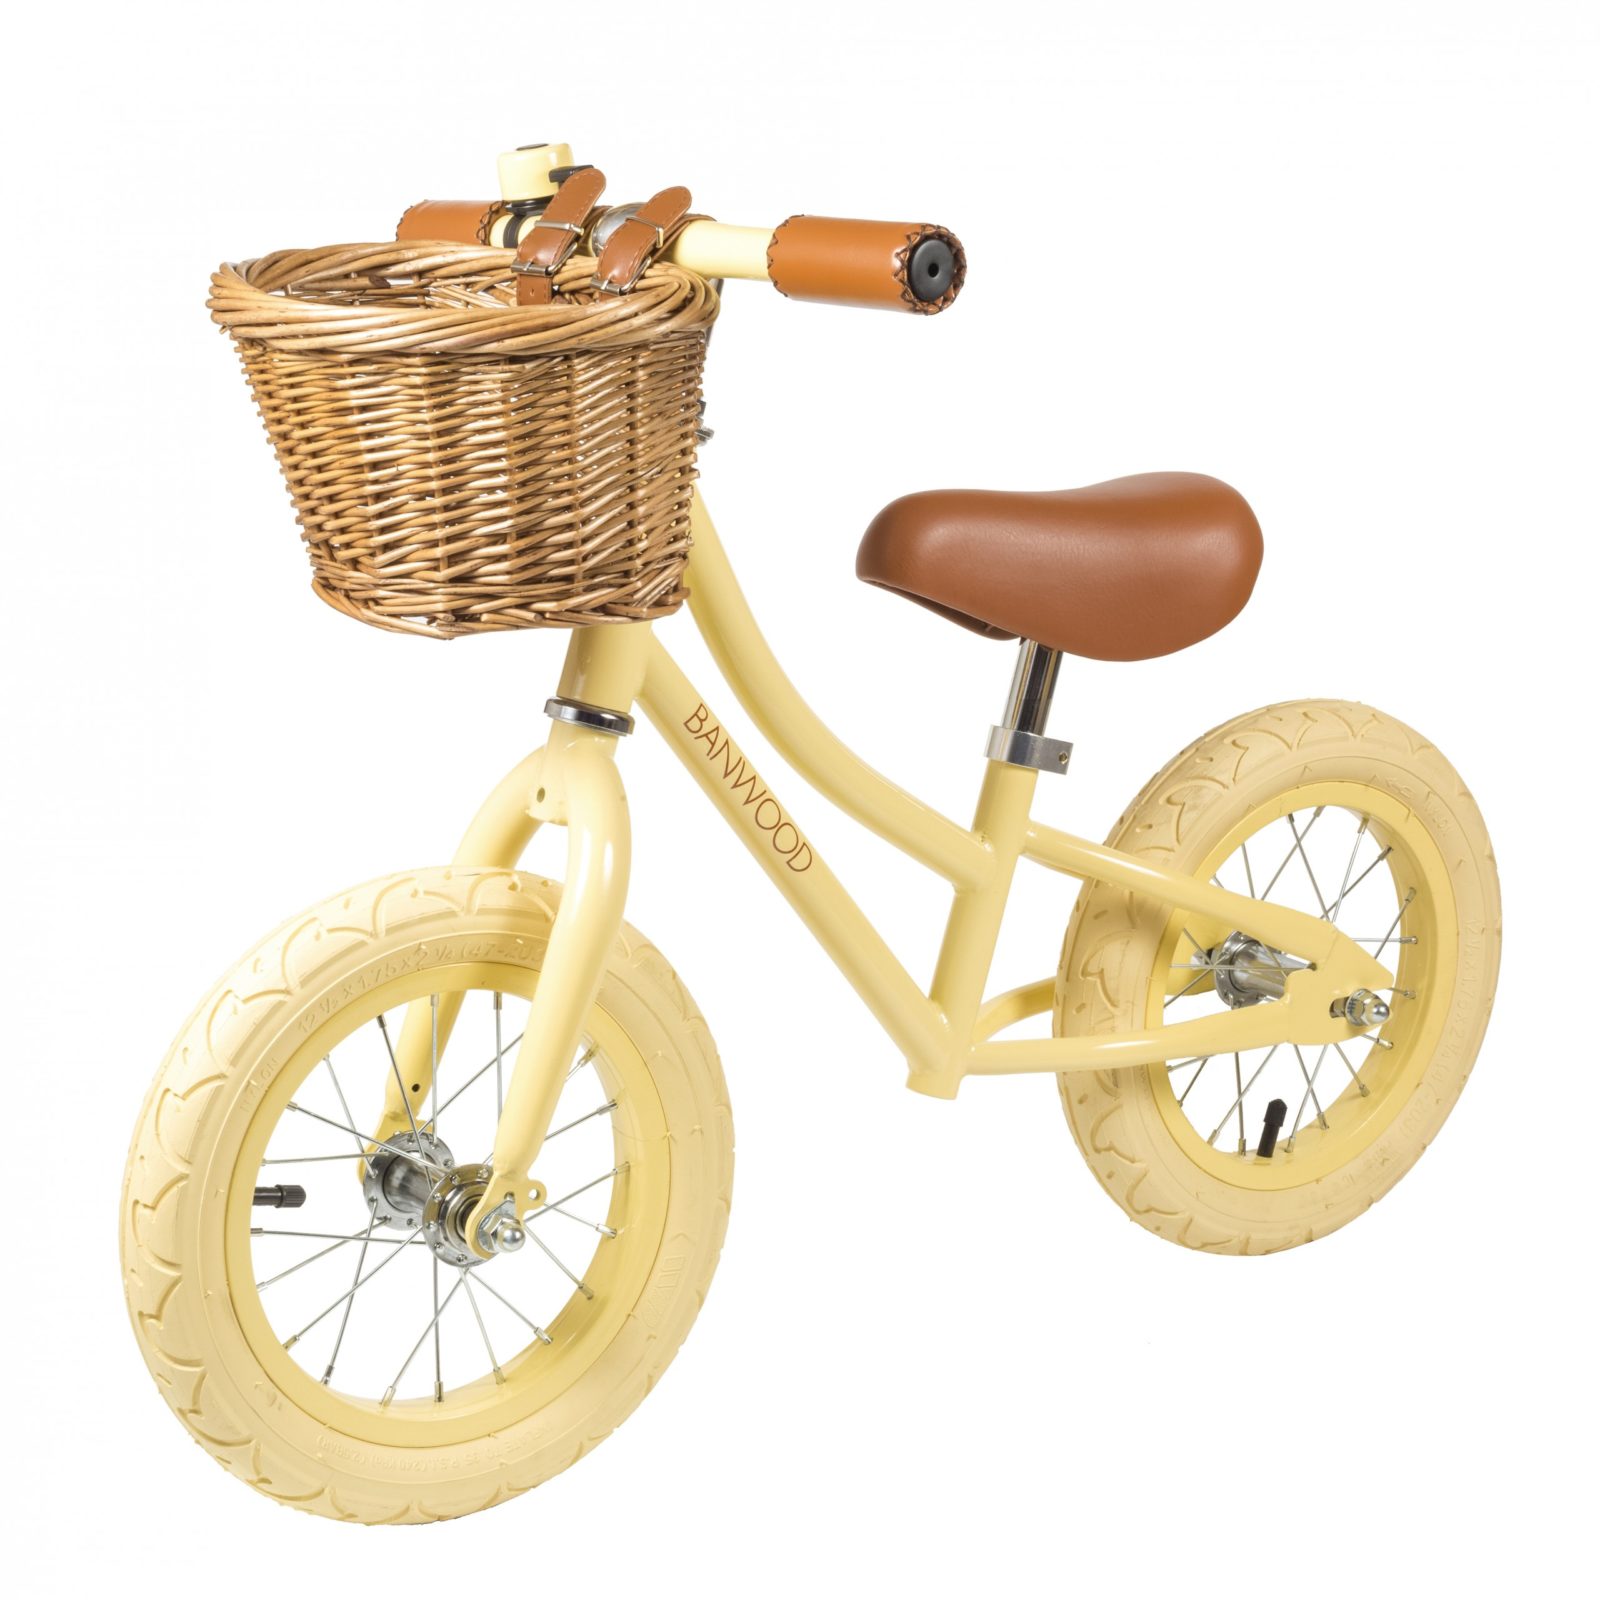 Die auffälligen Laufräder im coolen Vintage-Look von Banwood sind der Star auf dem Spielplatz – zum Beispiel im All-Over-Look in zartem Hellgelb gehalten. Ab 149 Euro. www.banwood.com